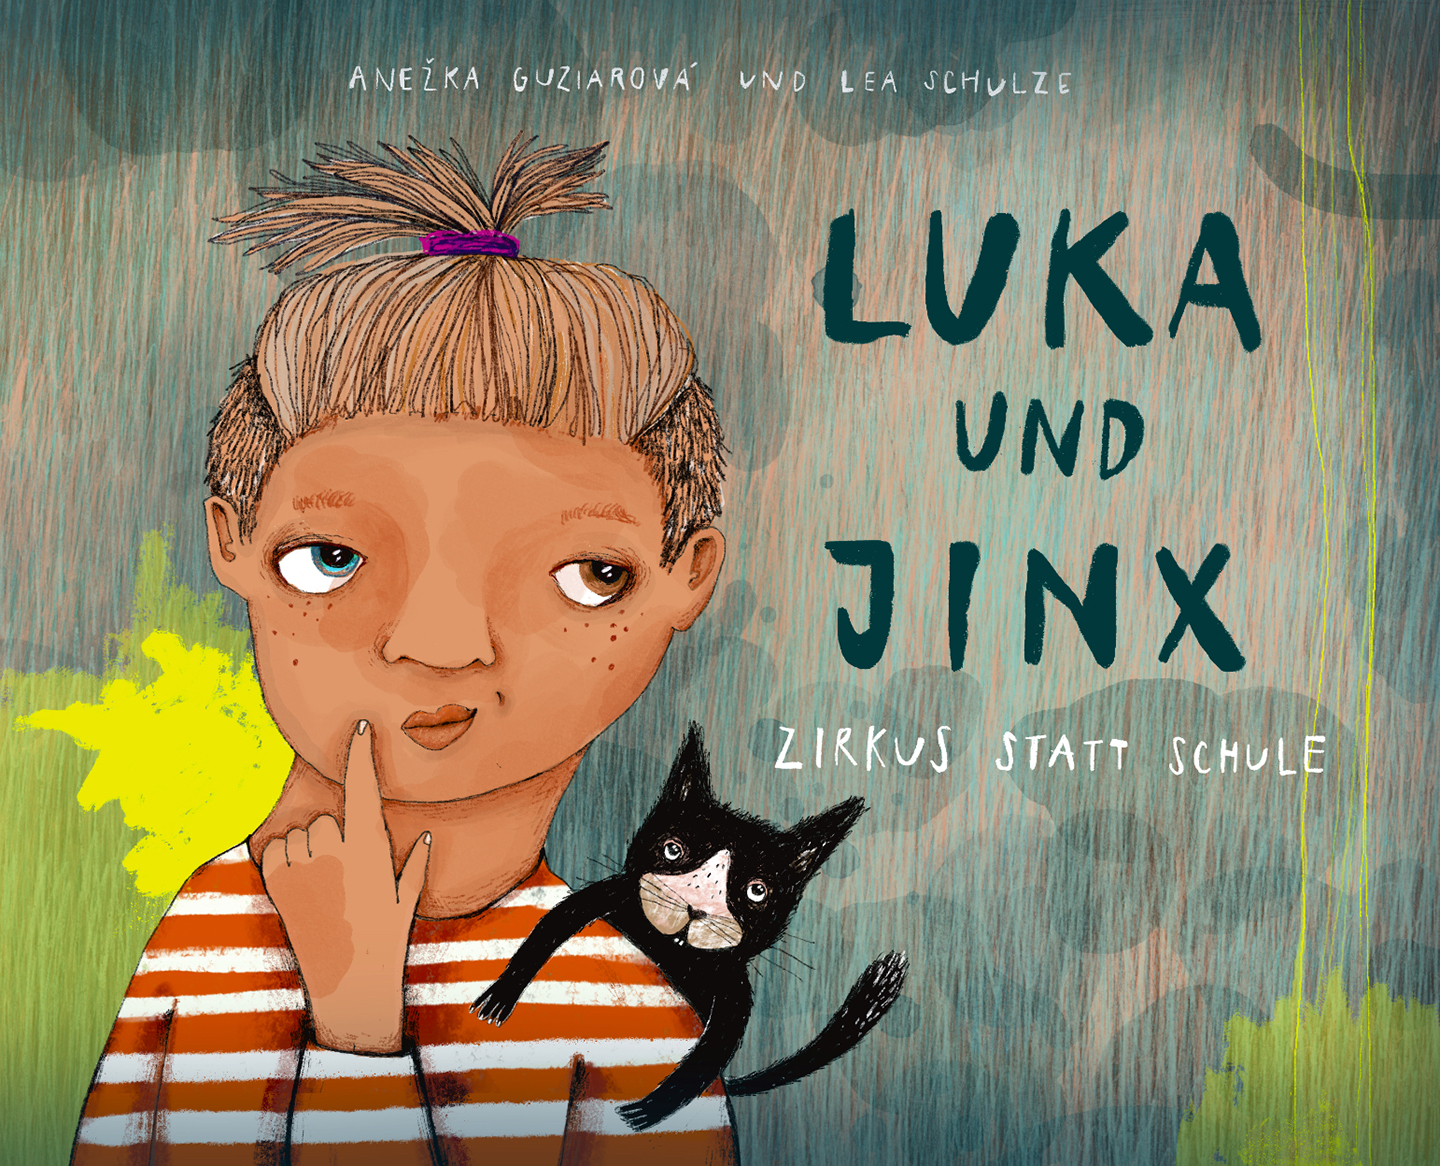 Luka und Jinx, ein Kinderbuch von Anezka Guziarova und Lea Schulze